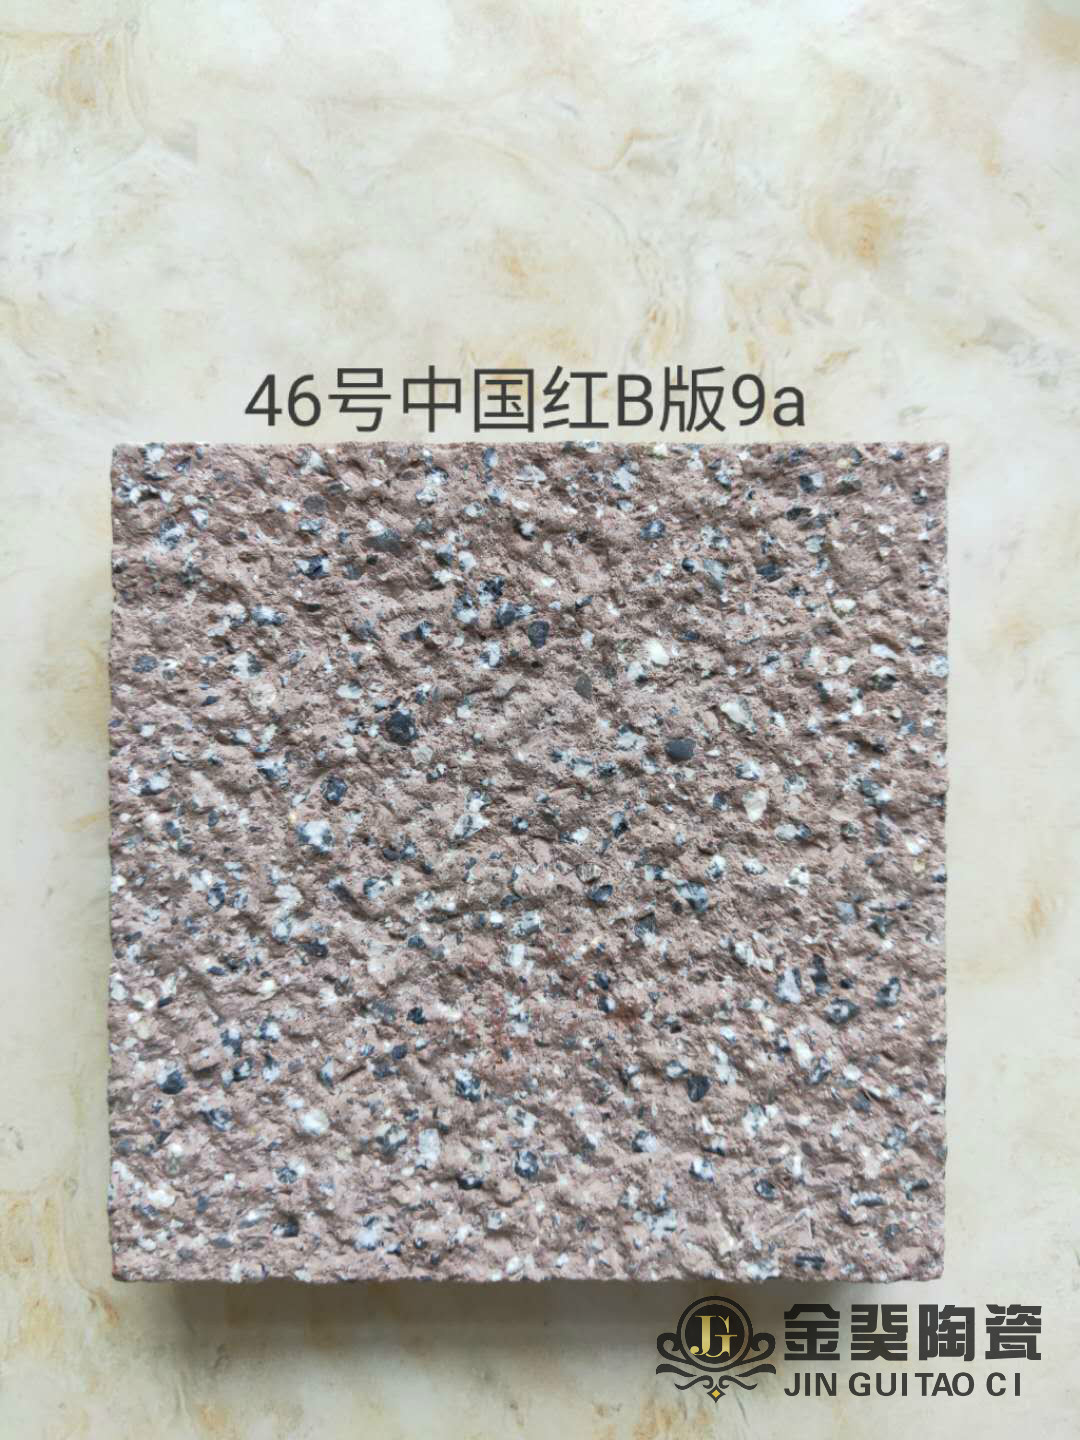 46号中国红B版9a